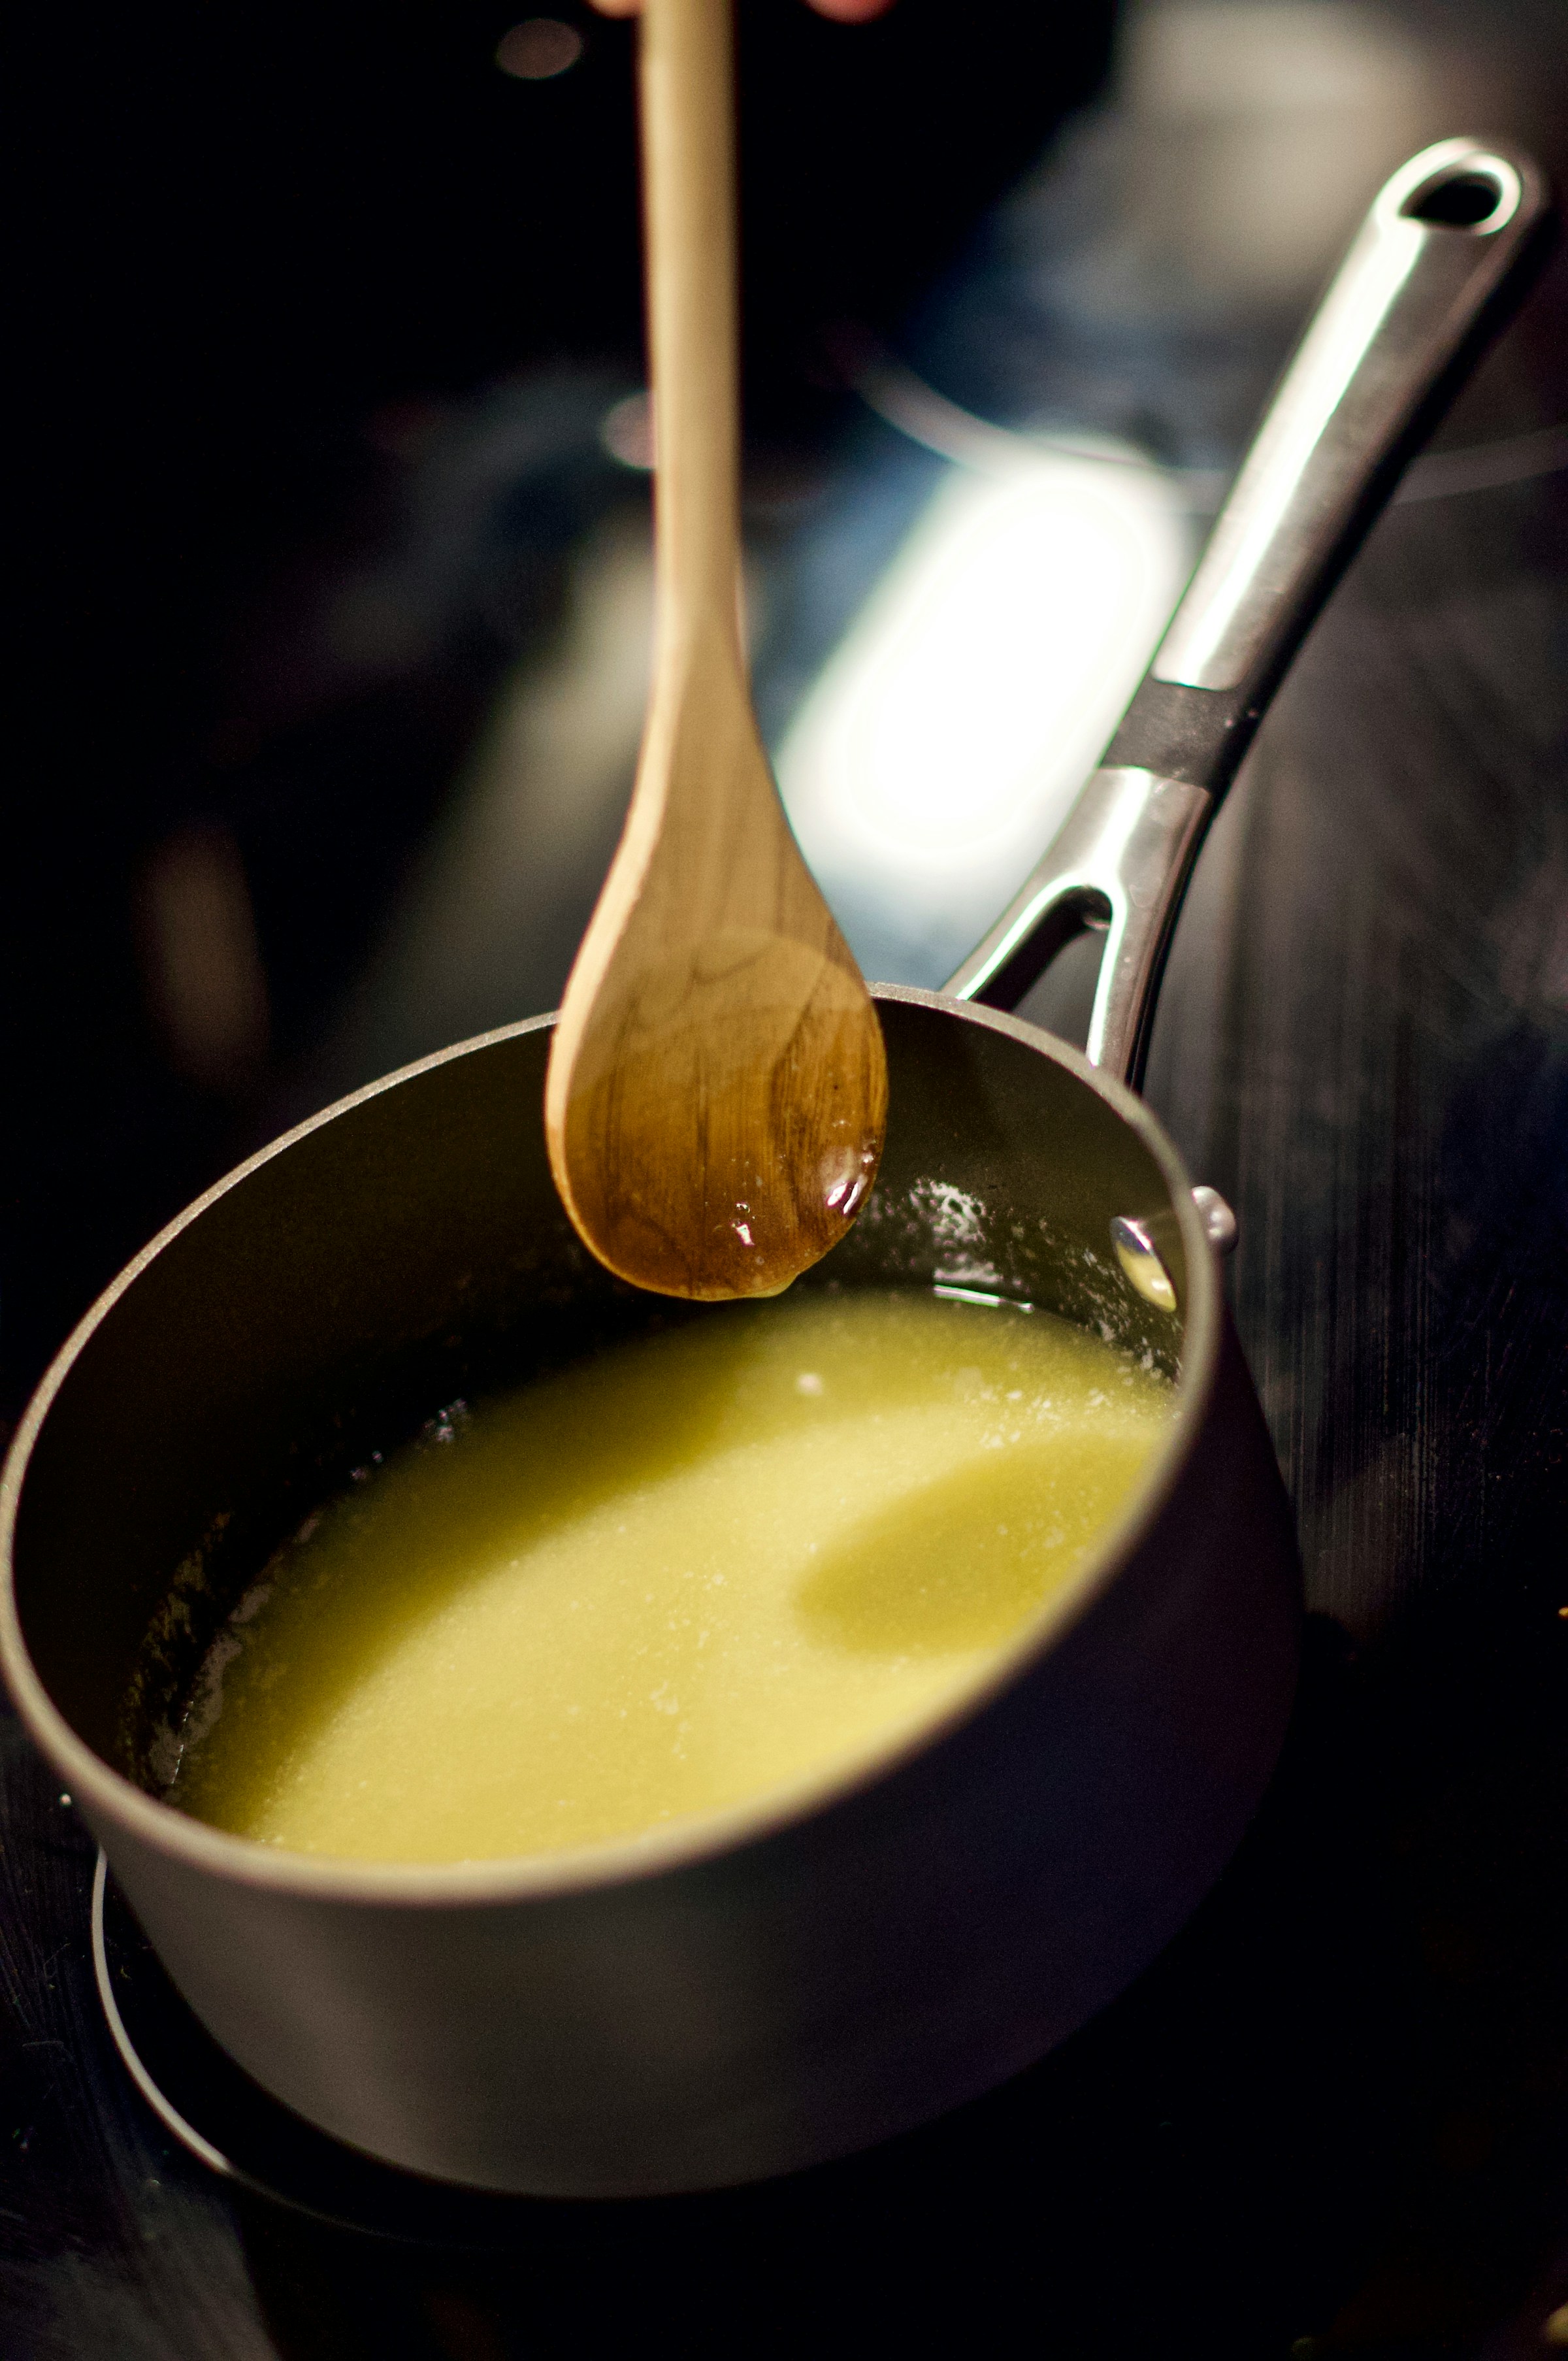 A pot of soup | Source: Unsplash